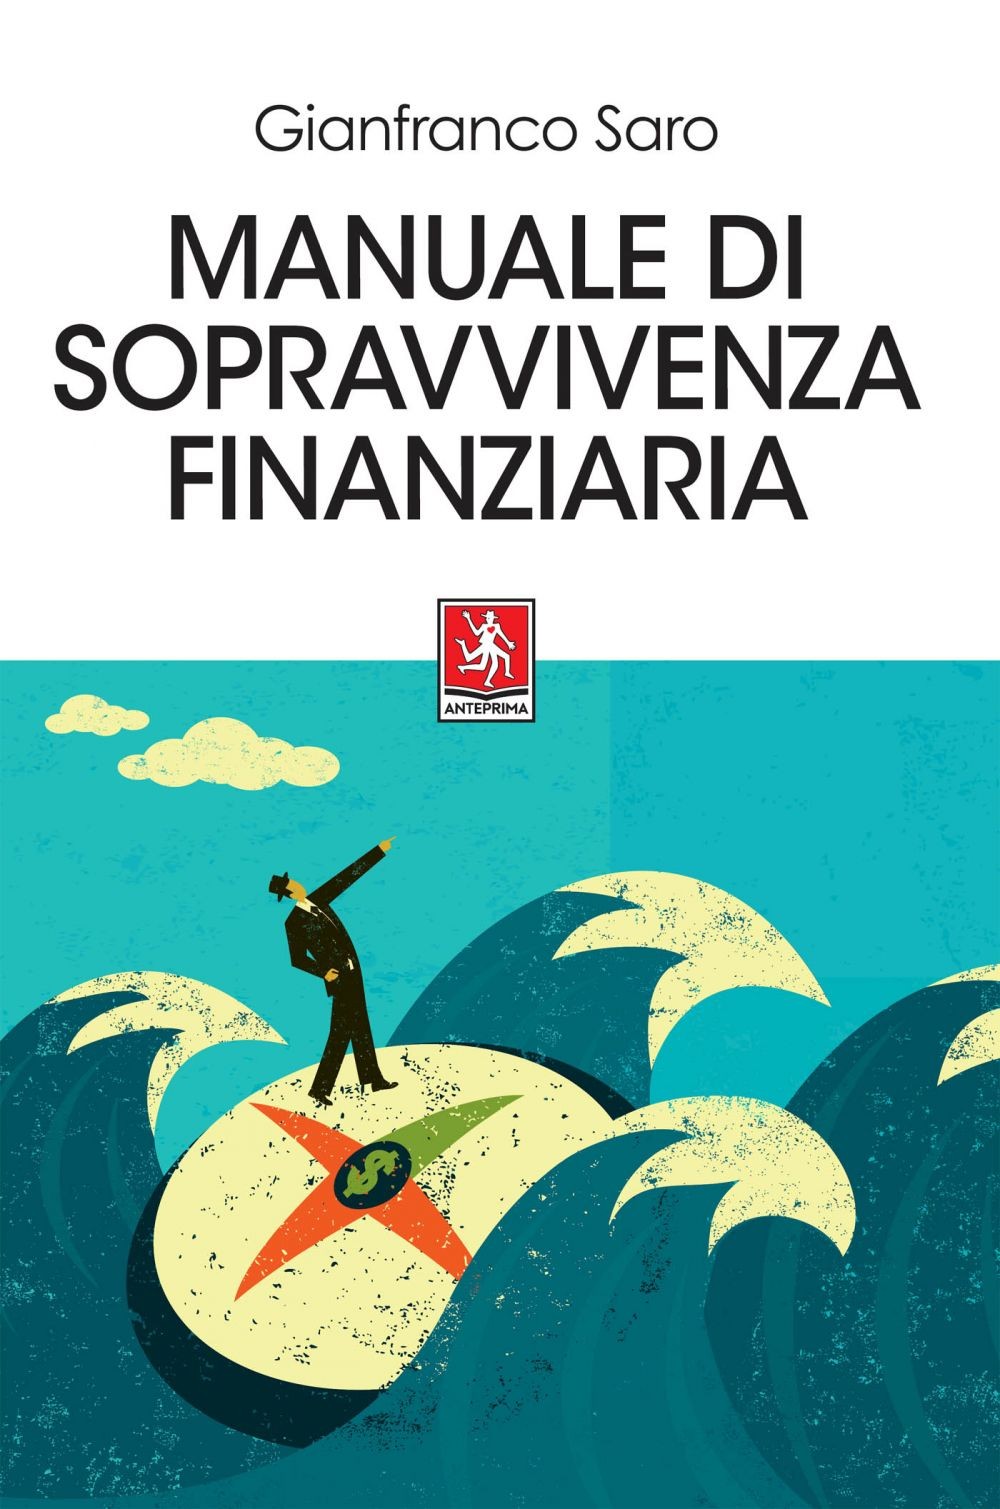 Manuale di sopravvivenza finanziaria - Librerie.coop